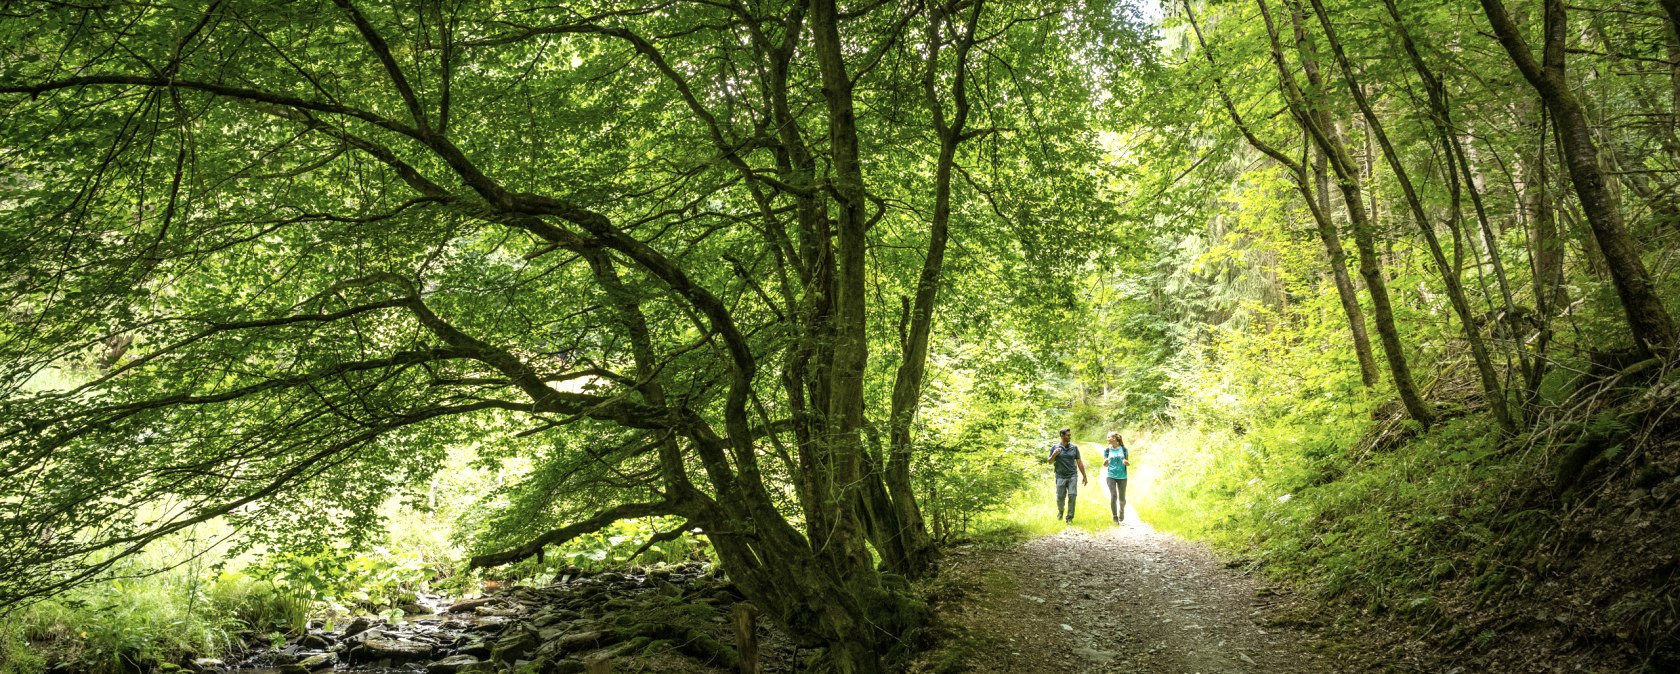 Wanderweg durch dichten Laubwald, © Eifel Tourismus GmbH, Dominik Ketz